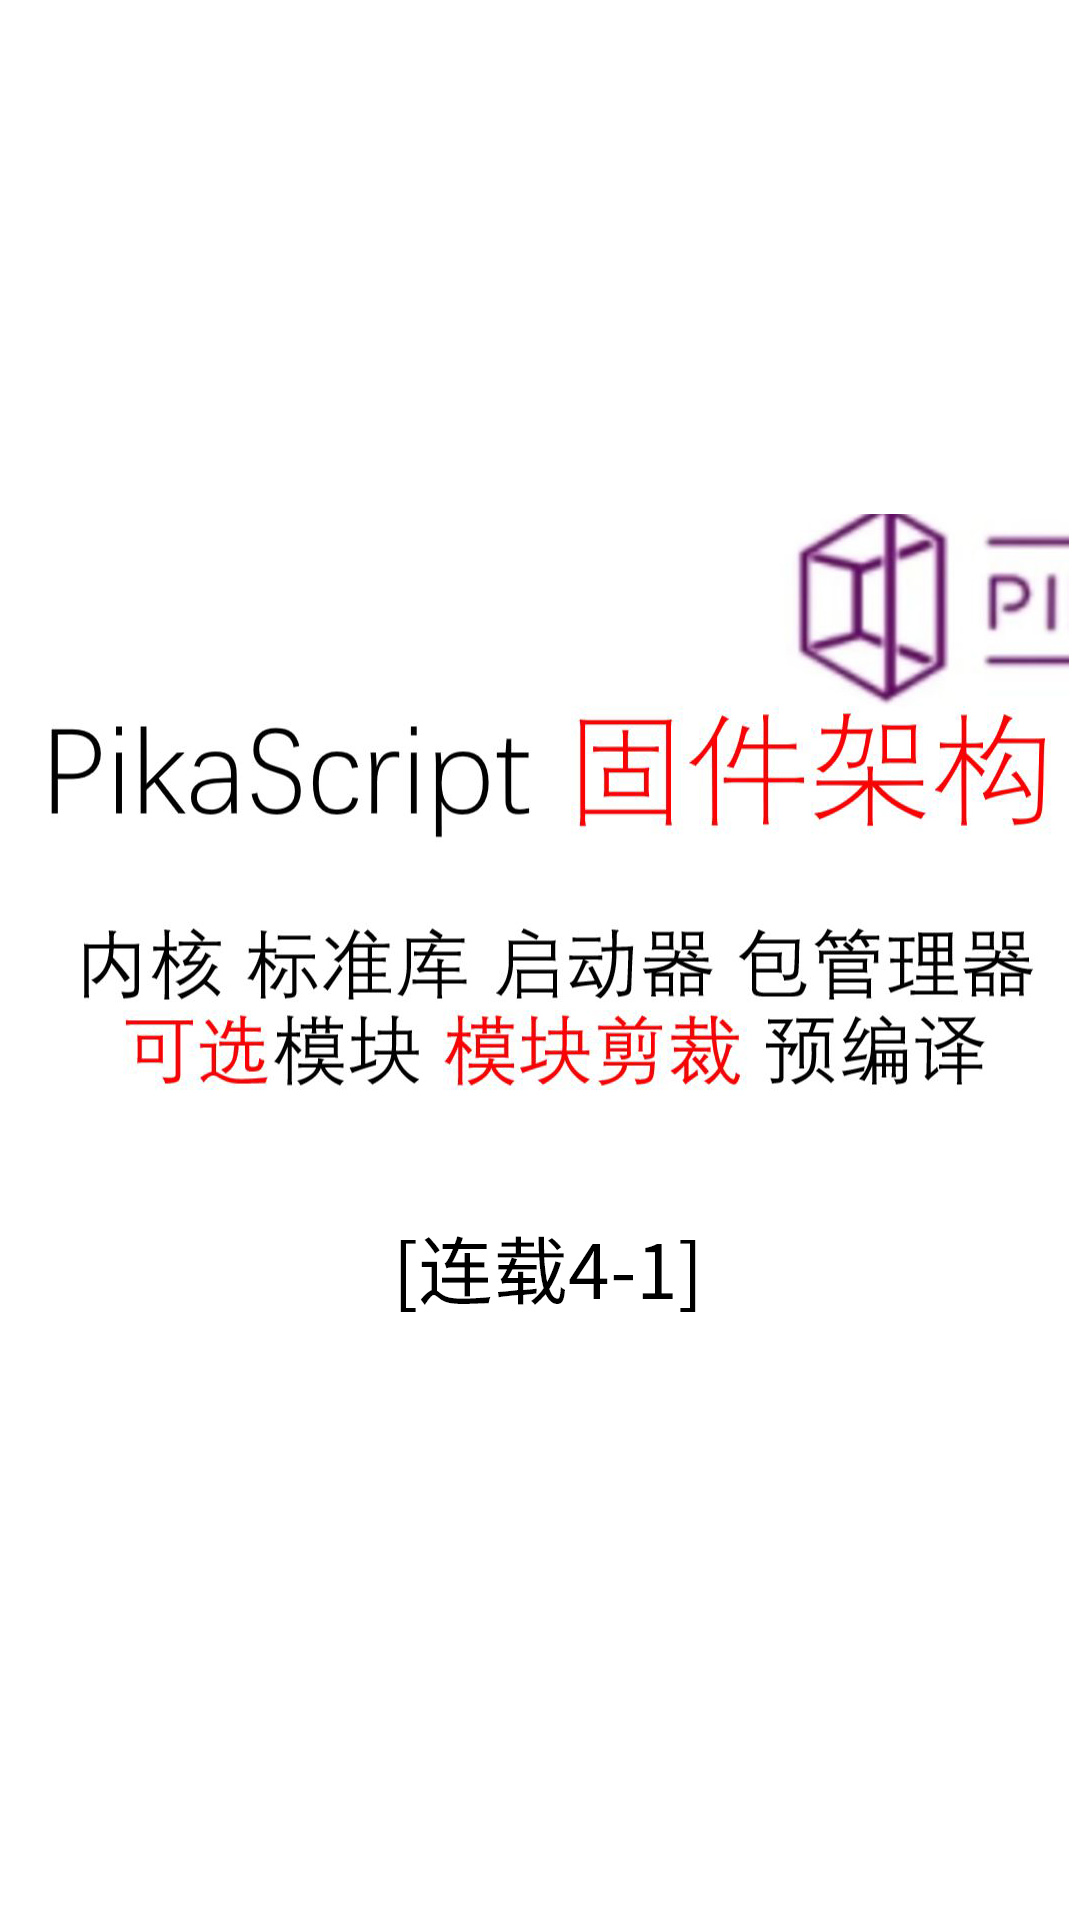 【连载04-1】固件架构--#Pika派开发板 手把手单片机python编程